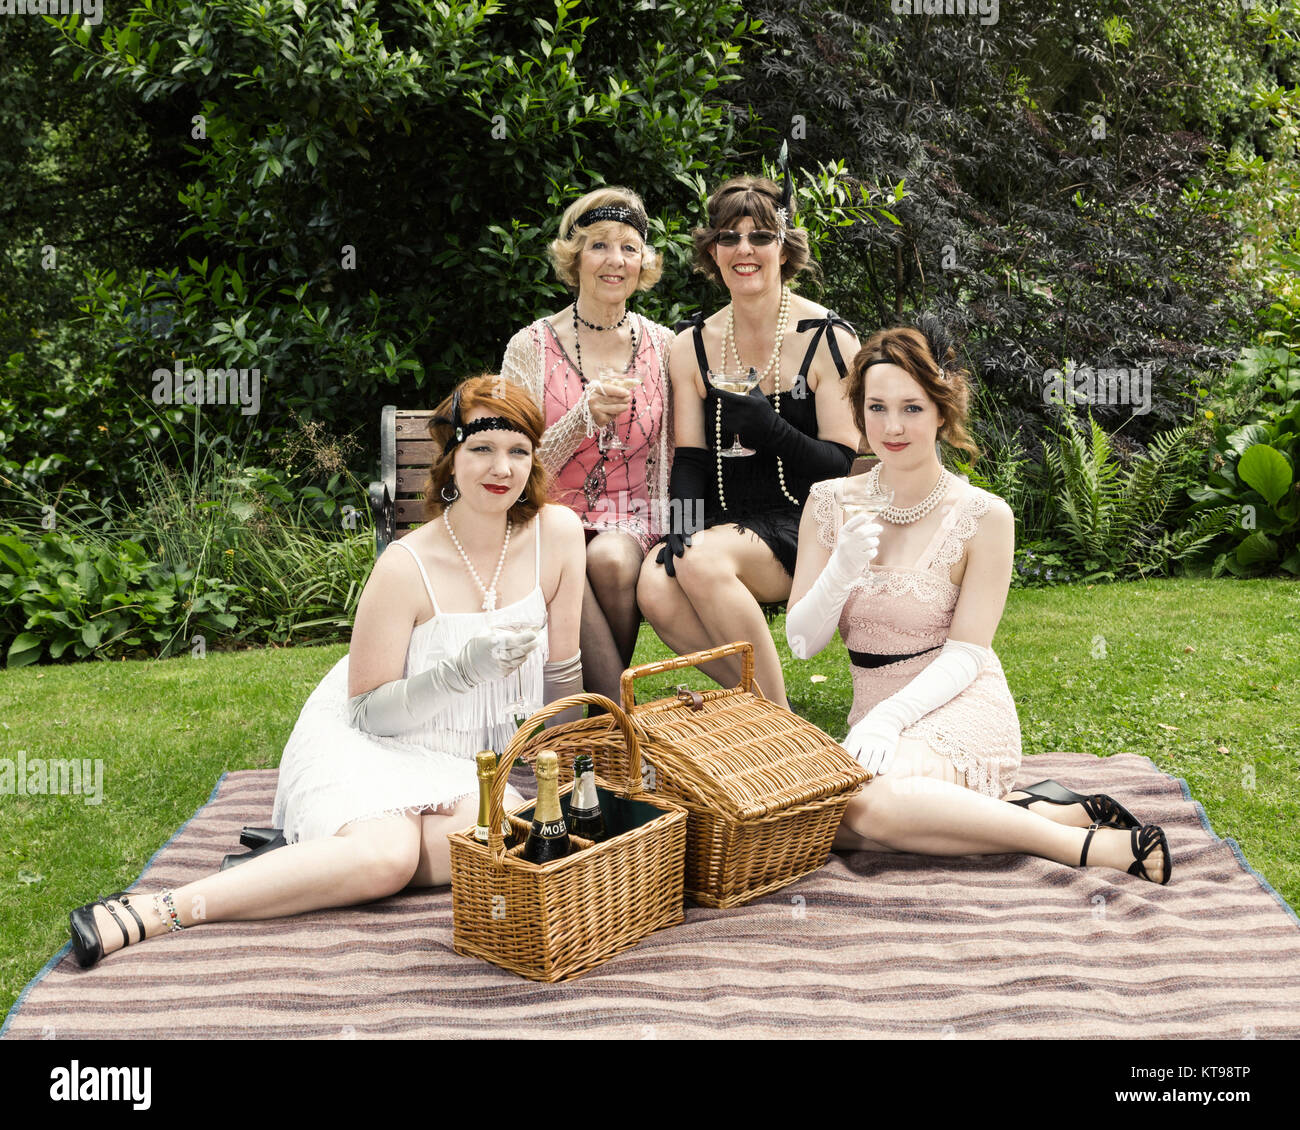 1930 Un jardín de estilo picnic con ropa de época Foto de stock